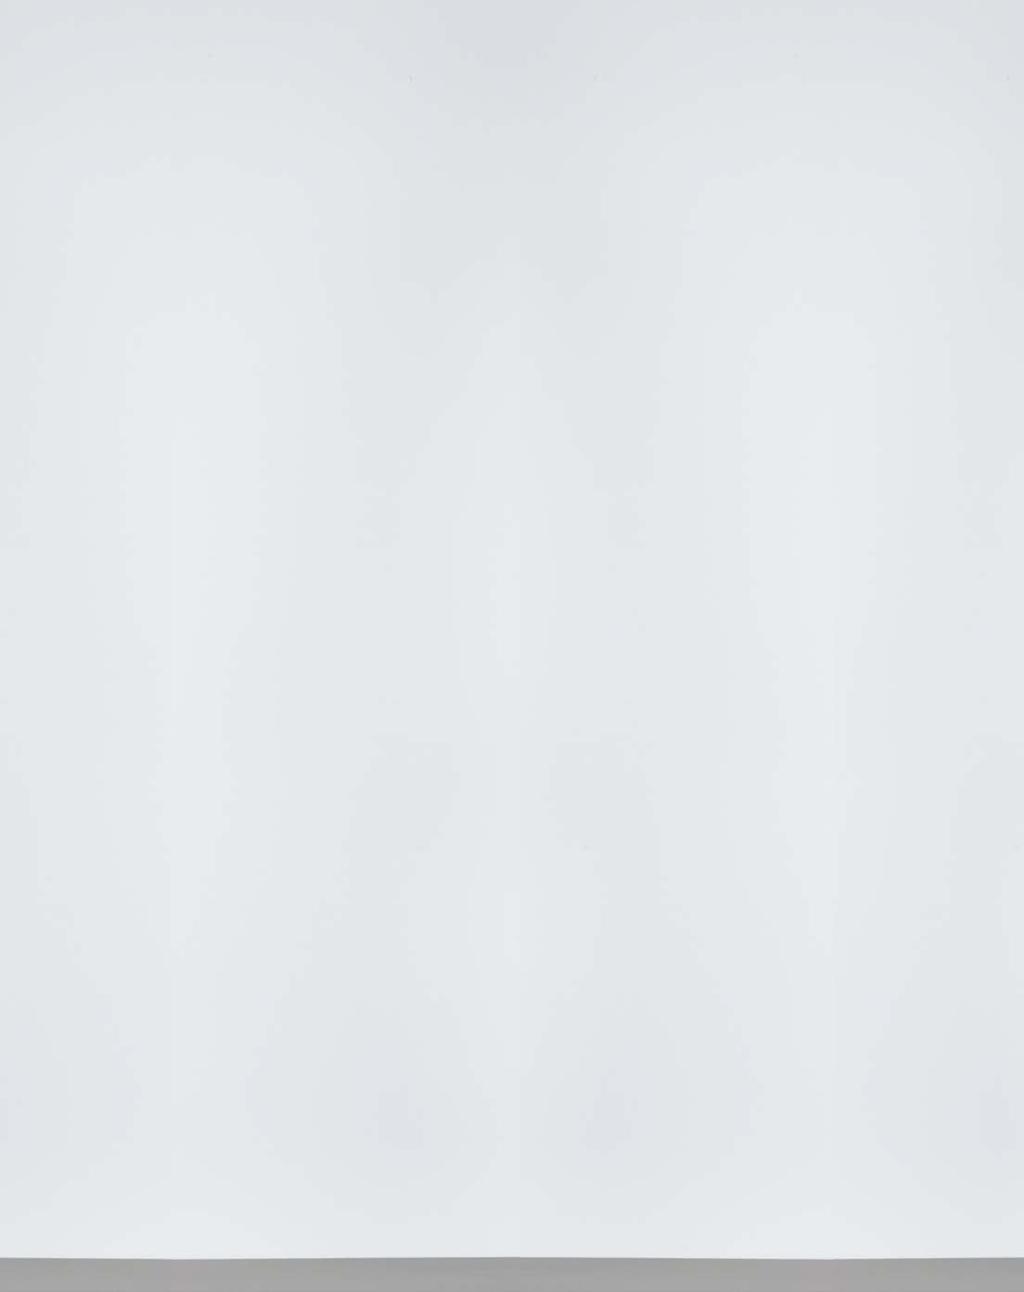 Casual Casual LOOKS SOMMER 2017 Luftig-leichte Stoffe in einer breiten Farbpalette setzen sommerliche Akzente in der Casual-Linie: Zur Auswahl stehen etwa der sportive Anzug aus reinem Leinen